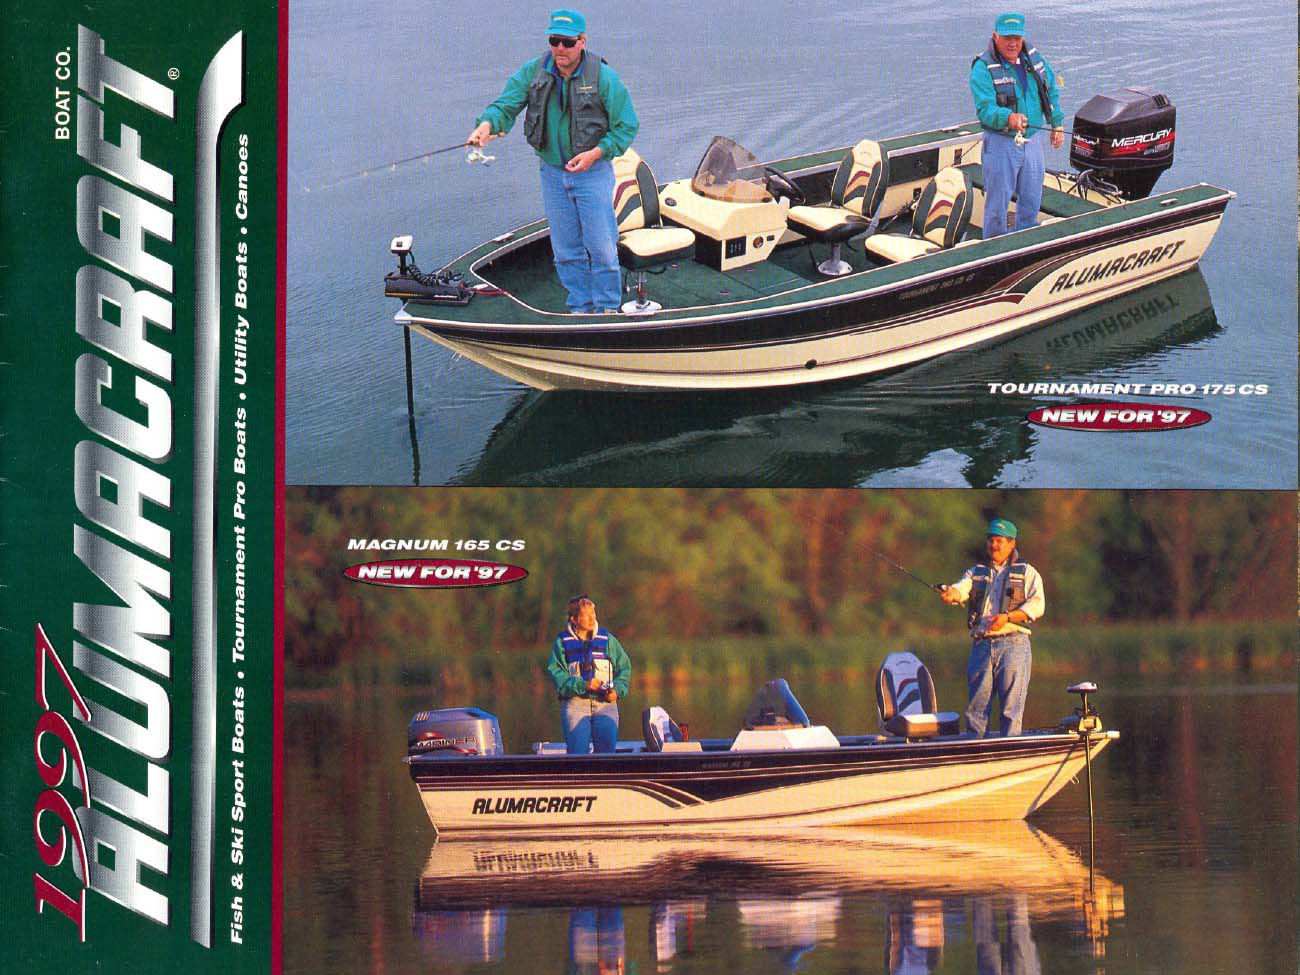 Catalogue 1997